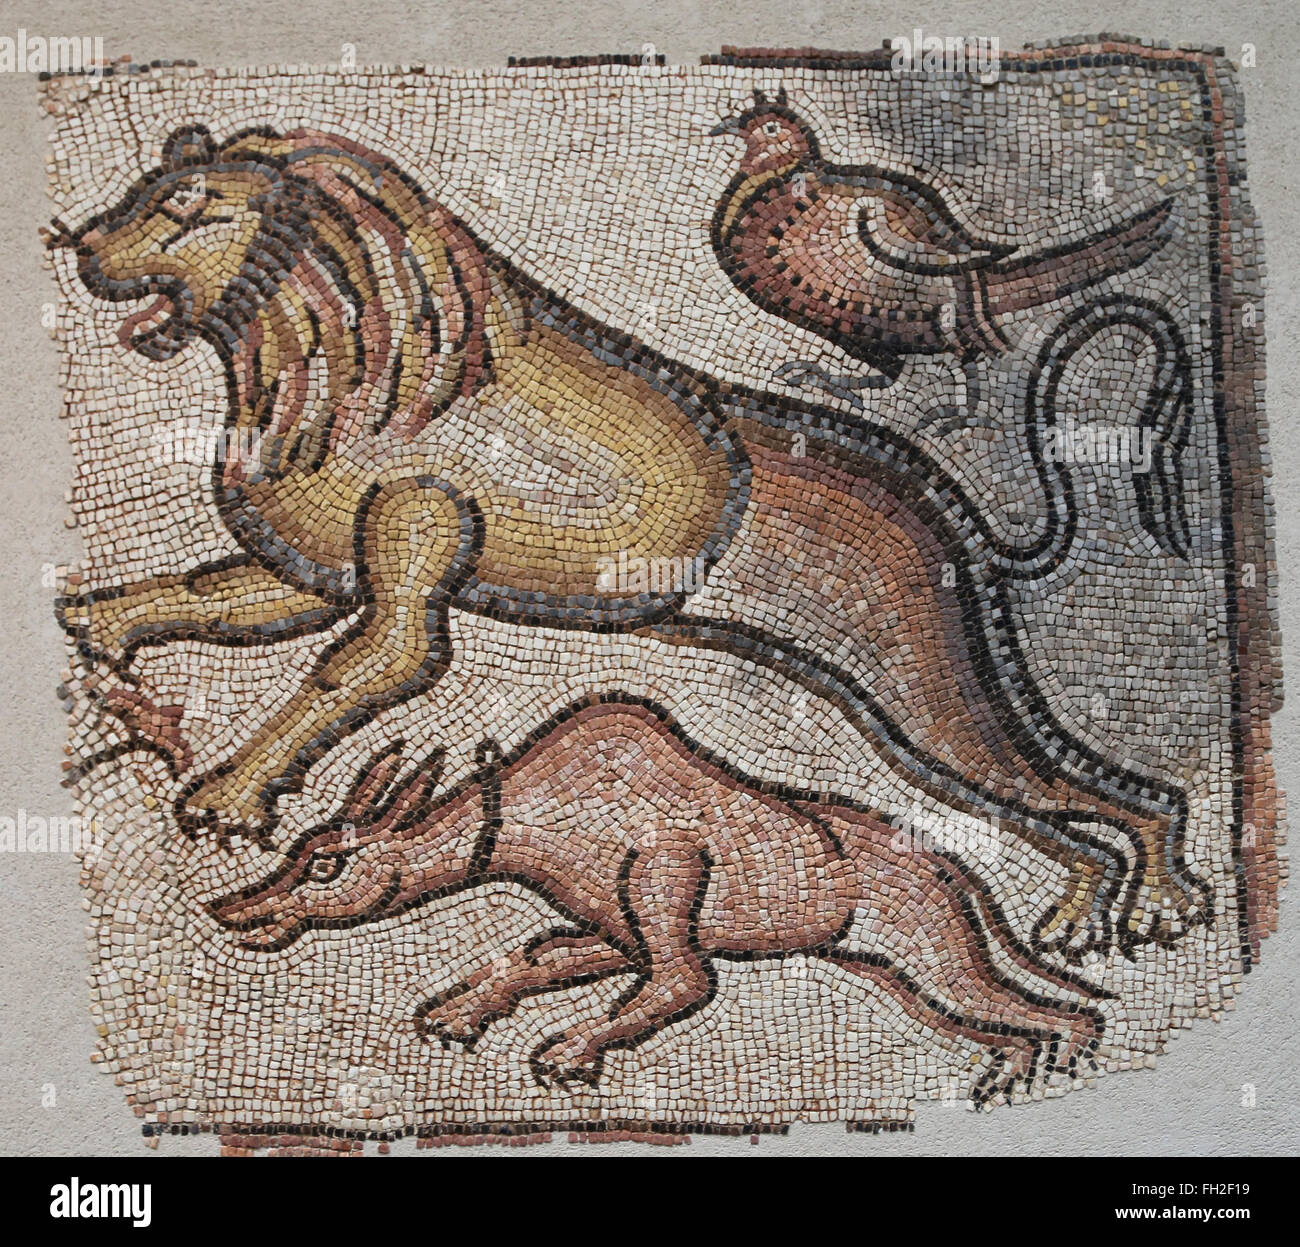 Östliches Mittelmeer römischen Mosaiken von Tieren, 5. / 6. Jahrhundert. Drei Tiere sind in der Rasse, ein Hund, ein Löwe und ein Fasan Stockfoto